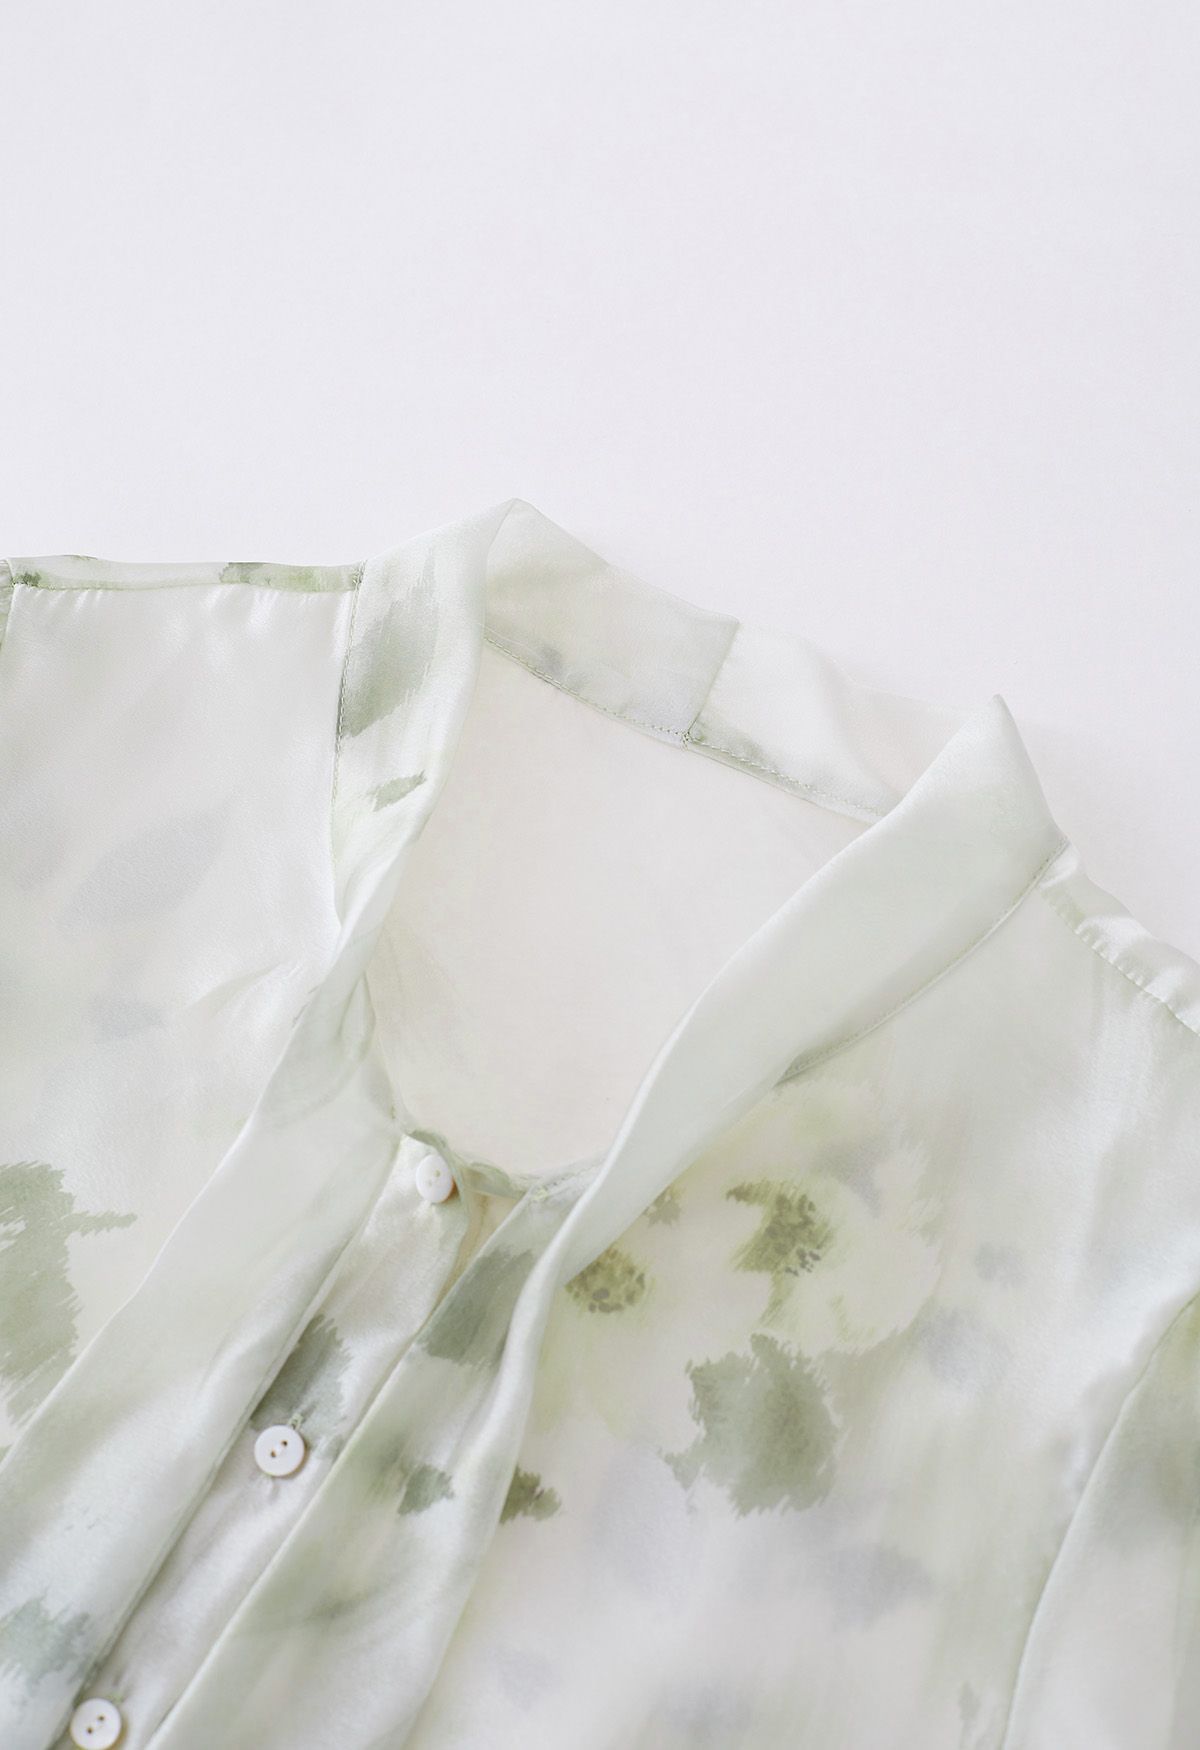 Camisa transparente con lazo floral de acuarela en verde